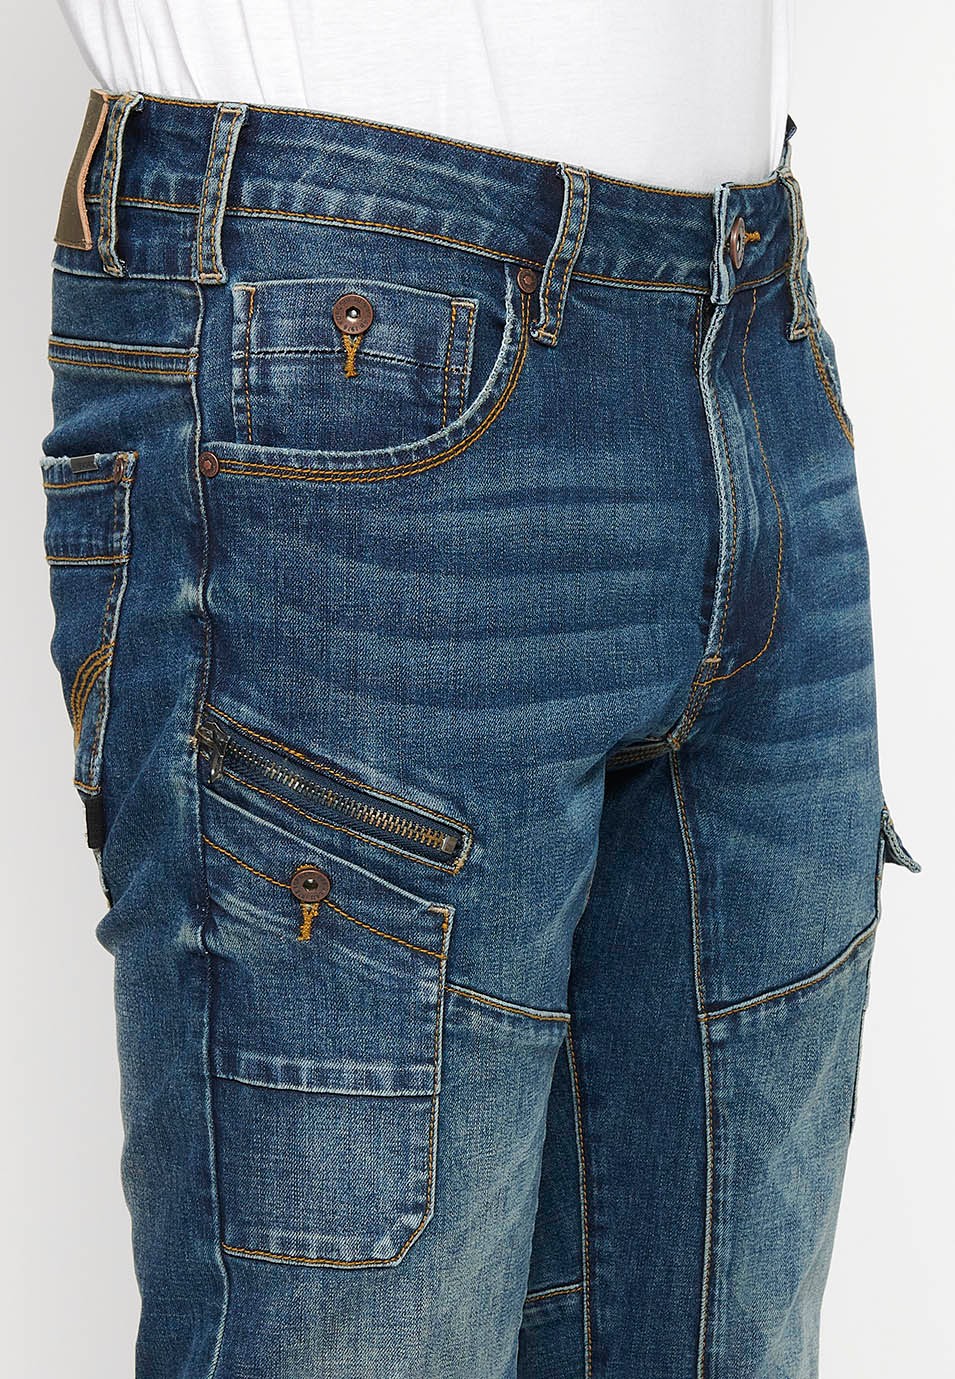 Pantalons denim càrrec workwear regular fit amb Tancament davanter amb cremallera i botó amb Butxaques laterals amb solapa de Color Blau per a Home